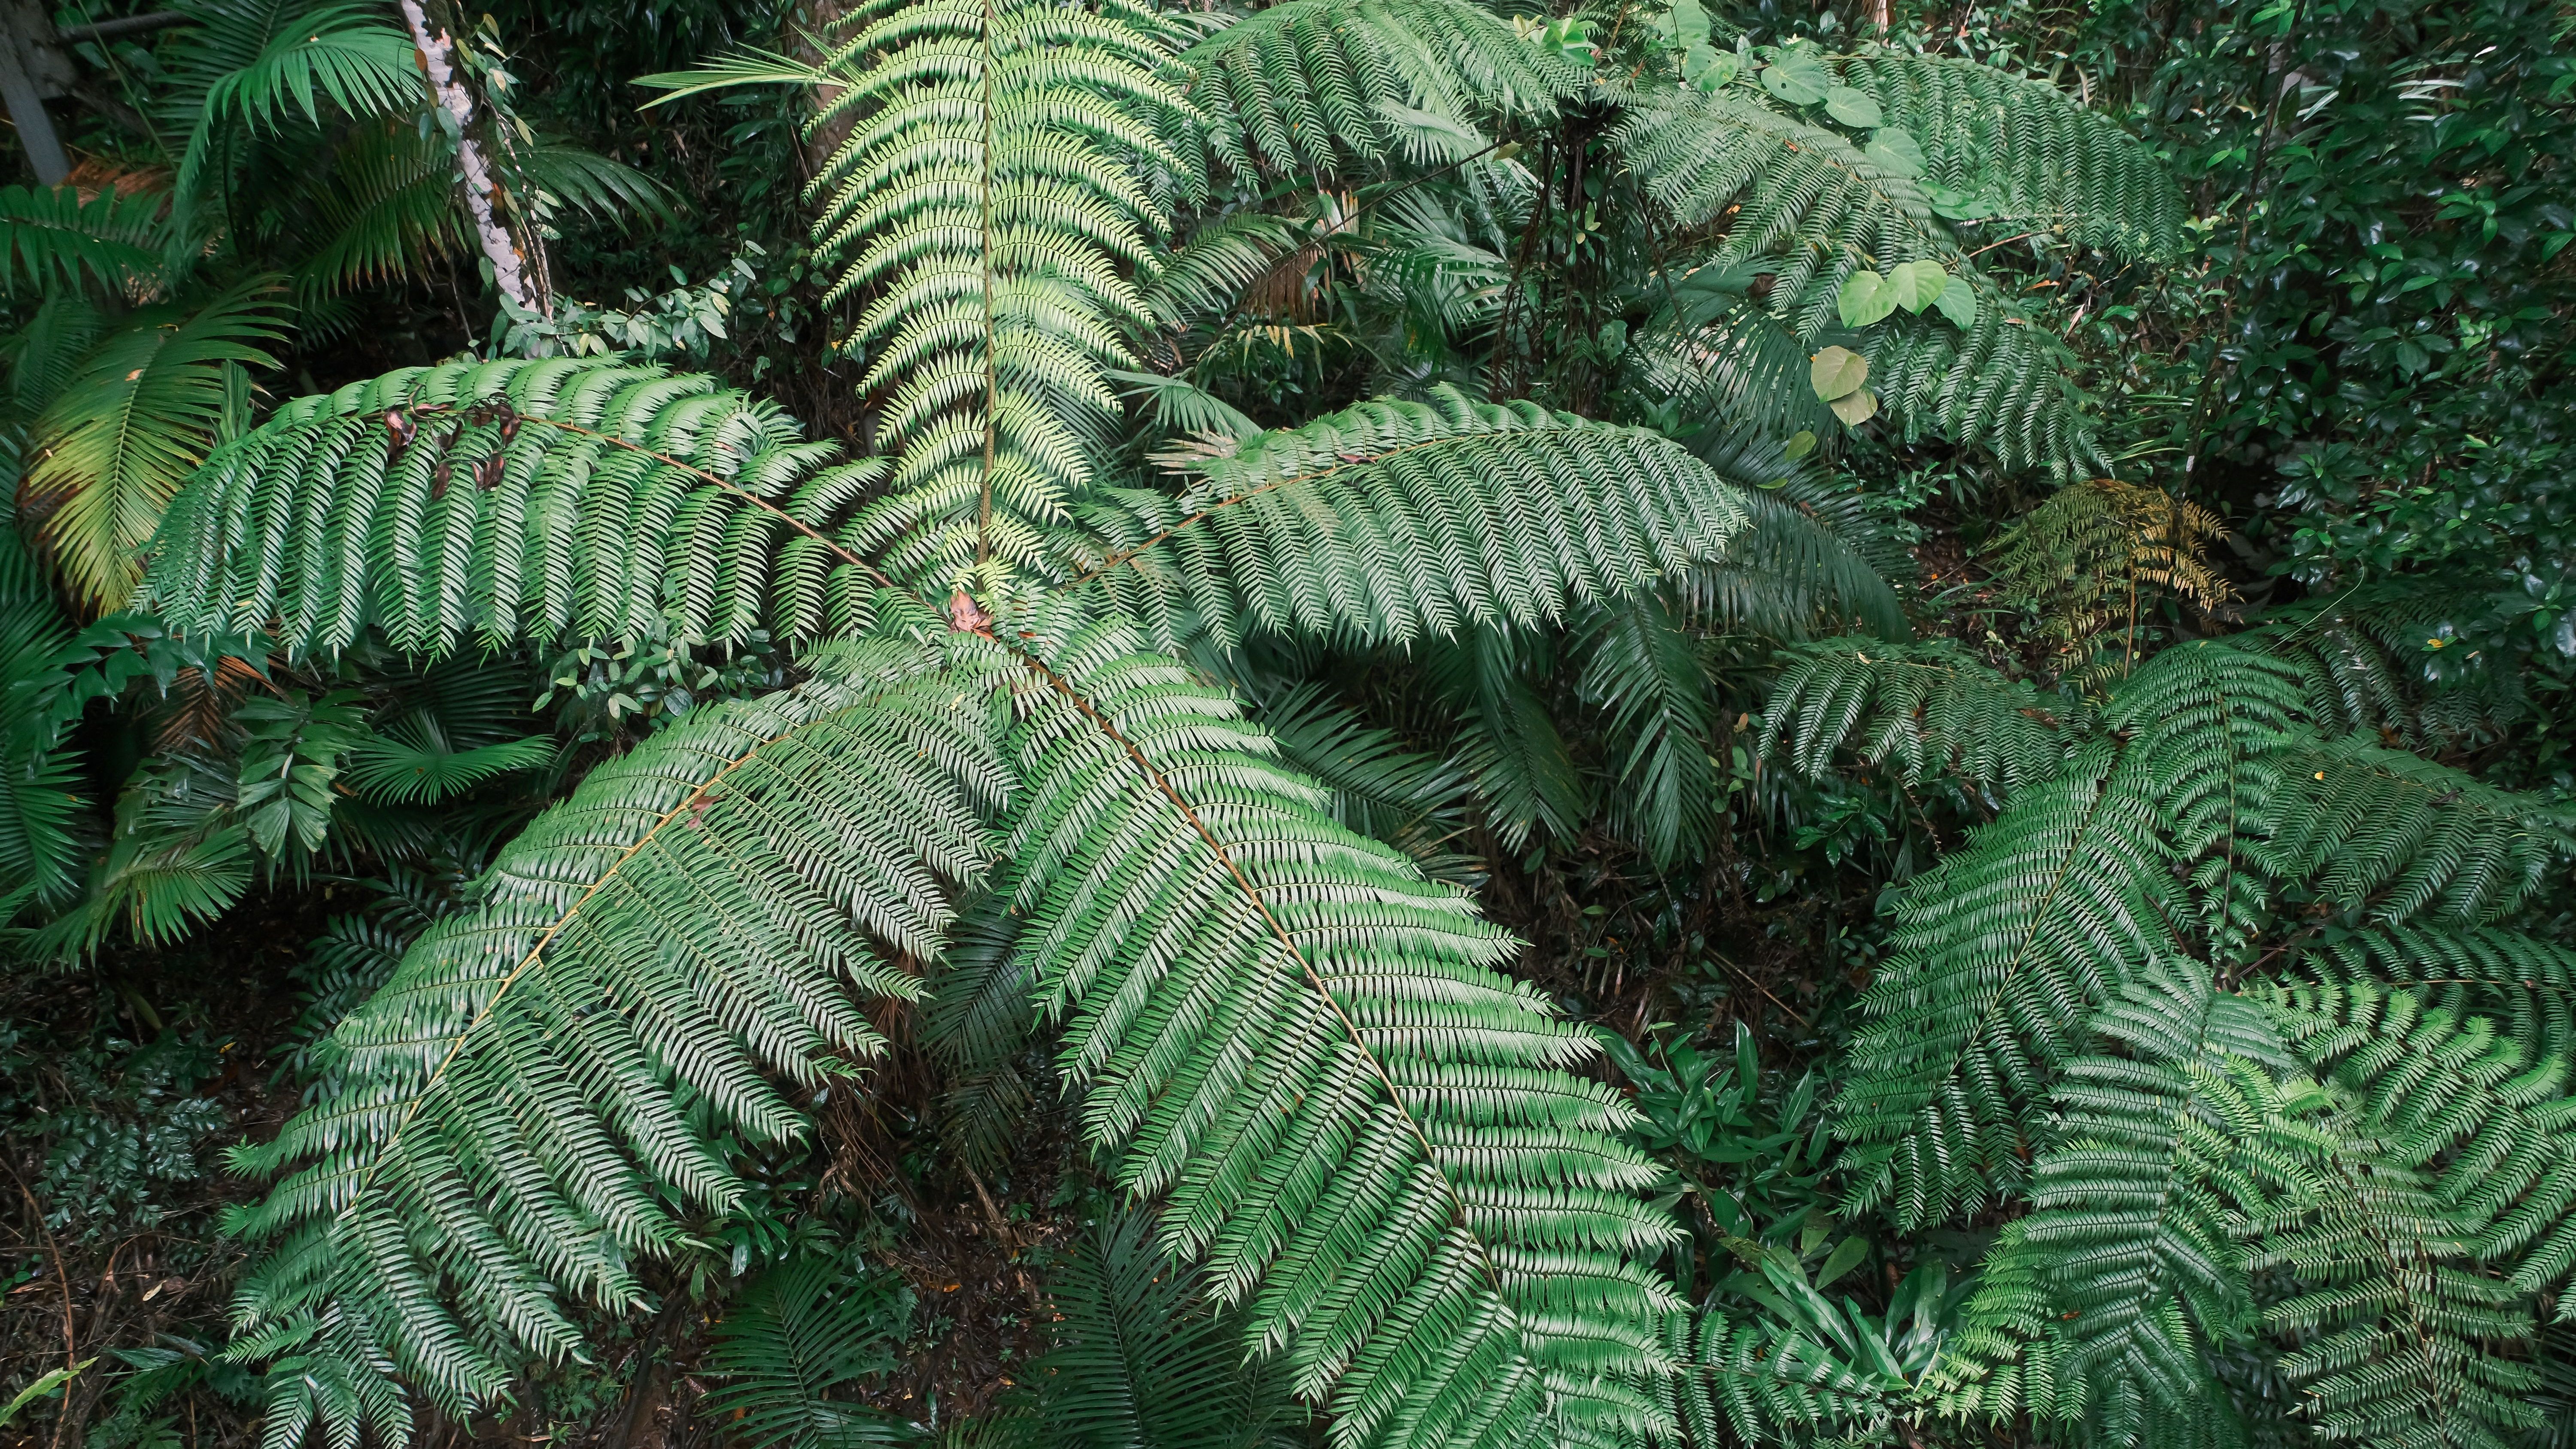 Der Daintree Rainforest im Norden Australiens ist der älteste Regenwald der Welt. Er existiert bereits seit rund 180 Millionen Jahren und zählt damit zu den ältesten noch lebenden Ökosystemen überhaupt. Hier kann man noch urzeitliche Pflanzen bewundern, wie etwa diese Baumfarne.